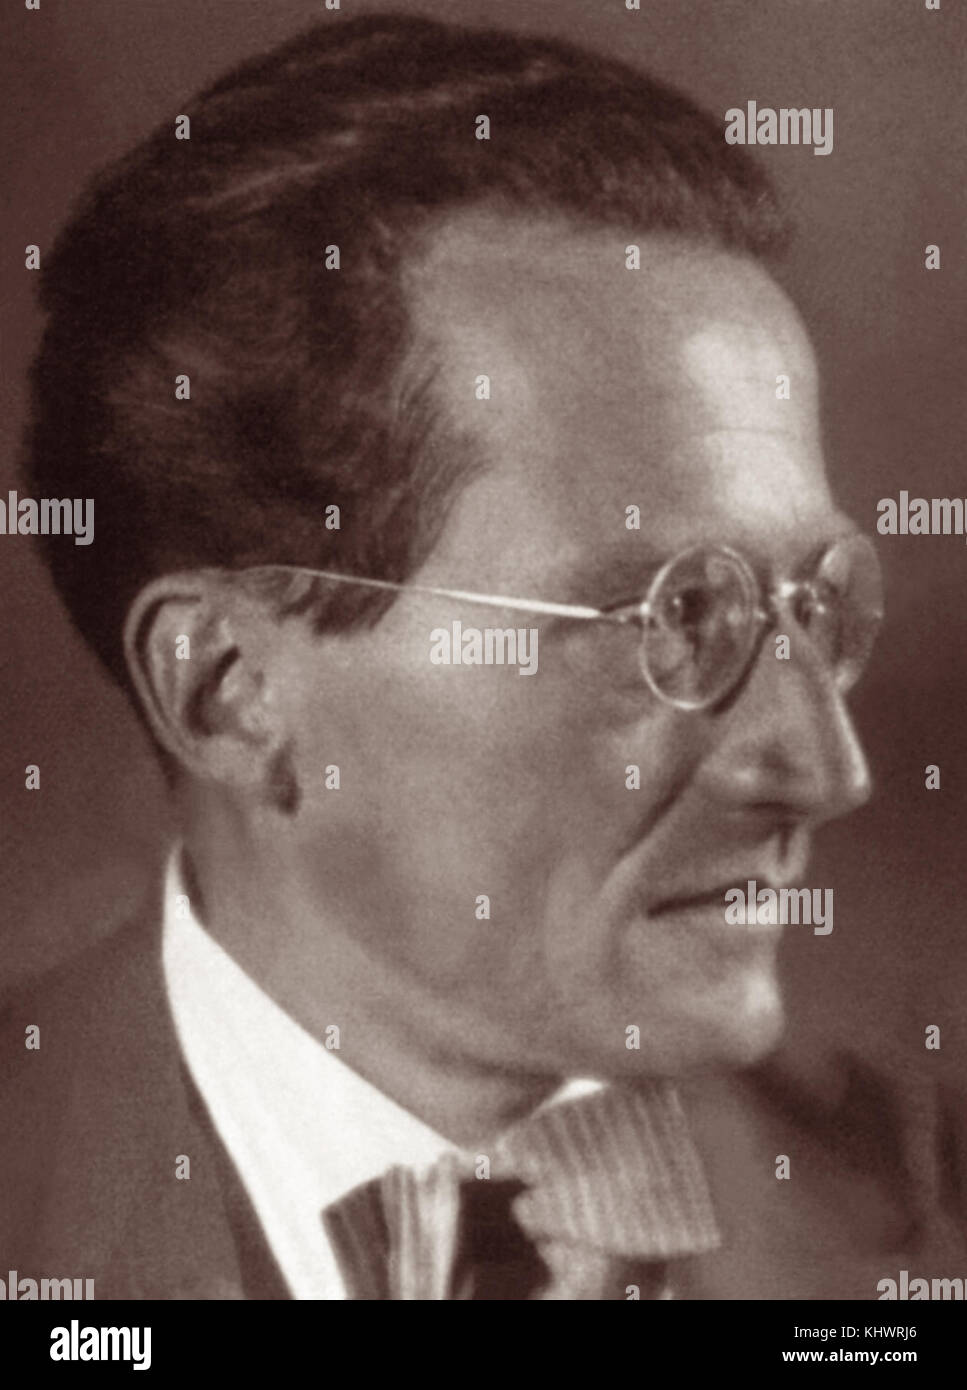 Dr. Erwin Schrödinger (1867-1961), österreichischer Physiker und Preisträger des Nobepreises für Physik 1933. Schrödinger entwickelte eine Reihe von grundlegenden Ergebnissen auf dem Gebiet der Quantentheorie und ist auch bekannt für seine "Chrödinger's CAT" Thought-Experiment. Stockfoto